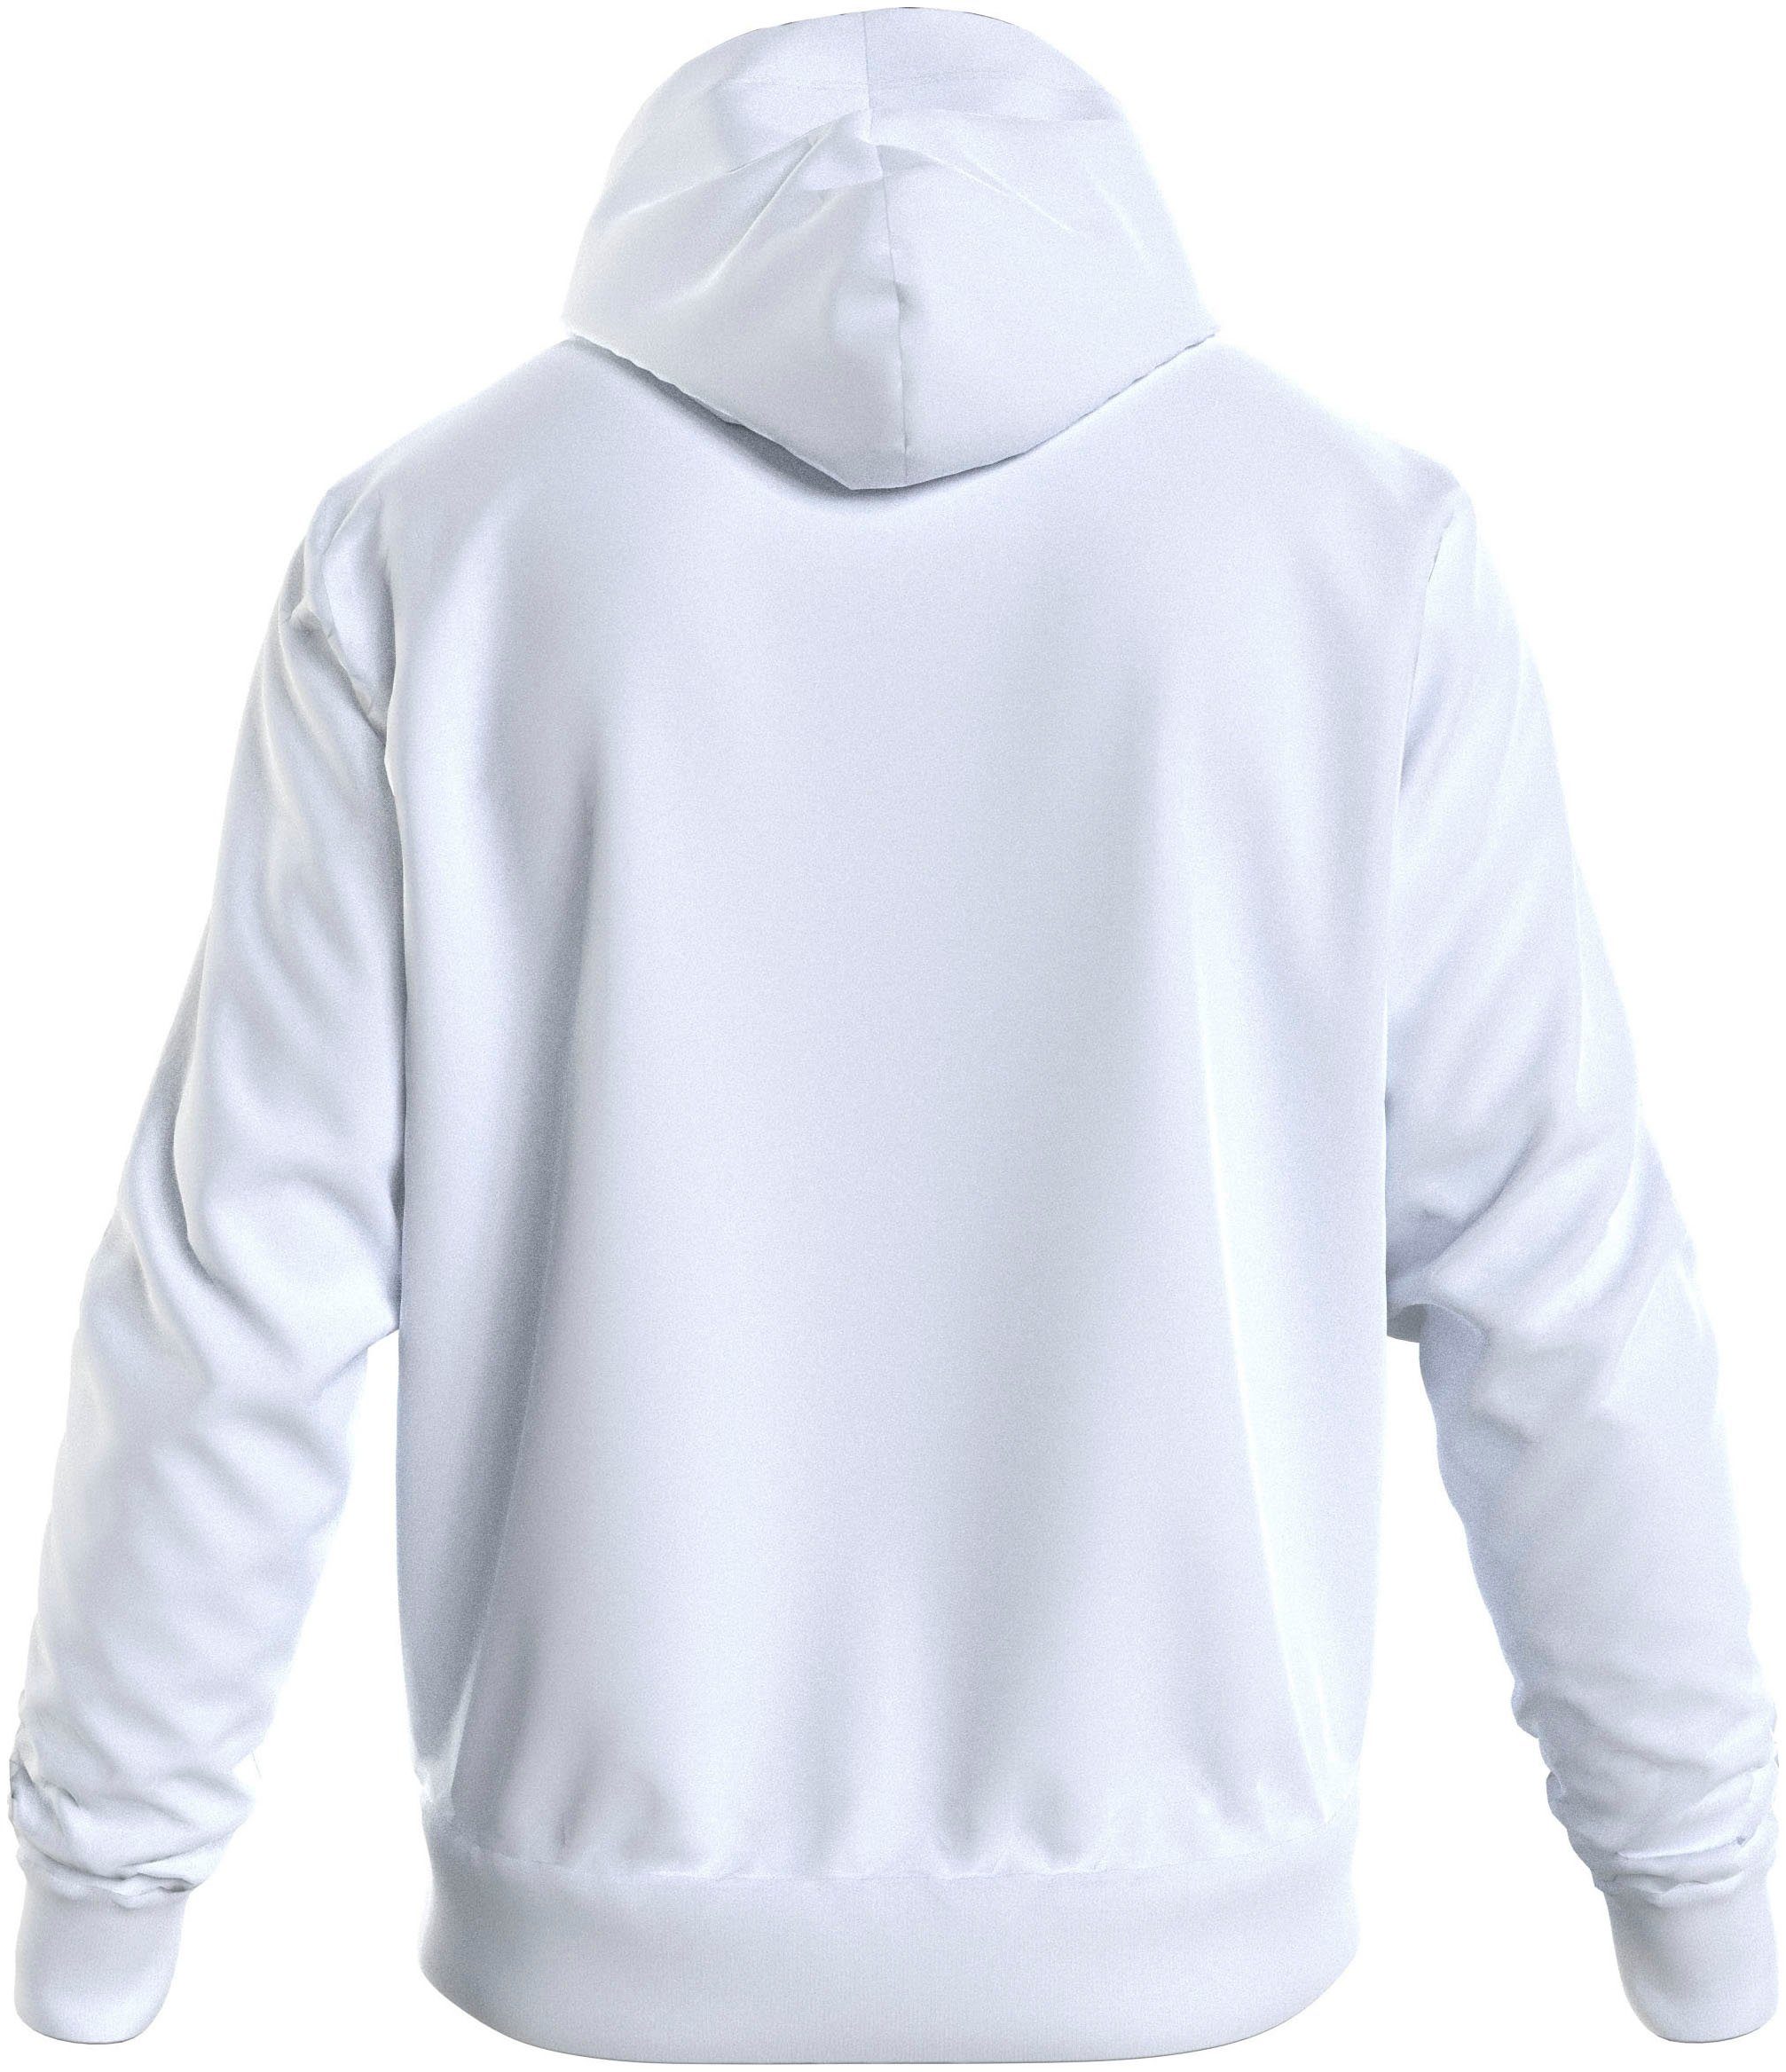 Big&Tall White COMFORT Bright Kapuzensweatshirt Klein LOGO HOODIE Calvin mit BT_HERO Markenlabel